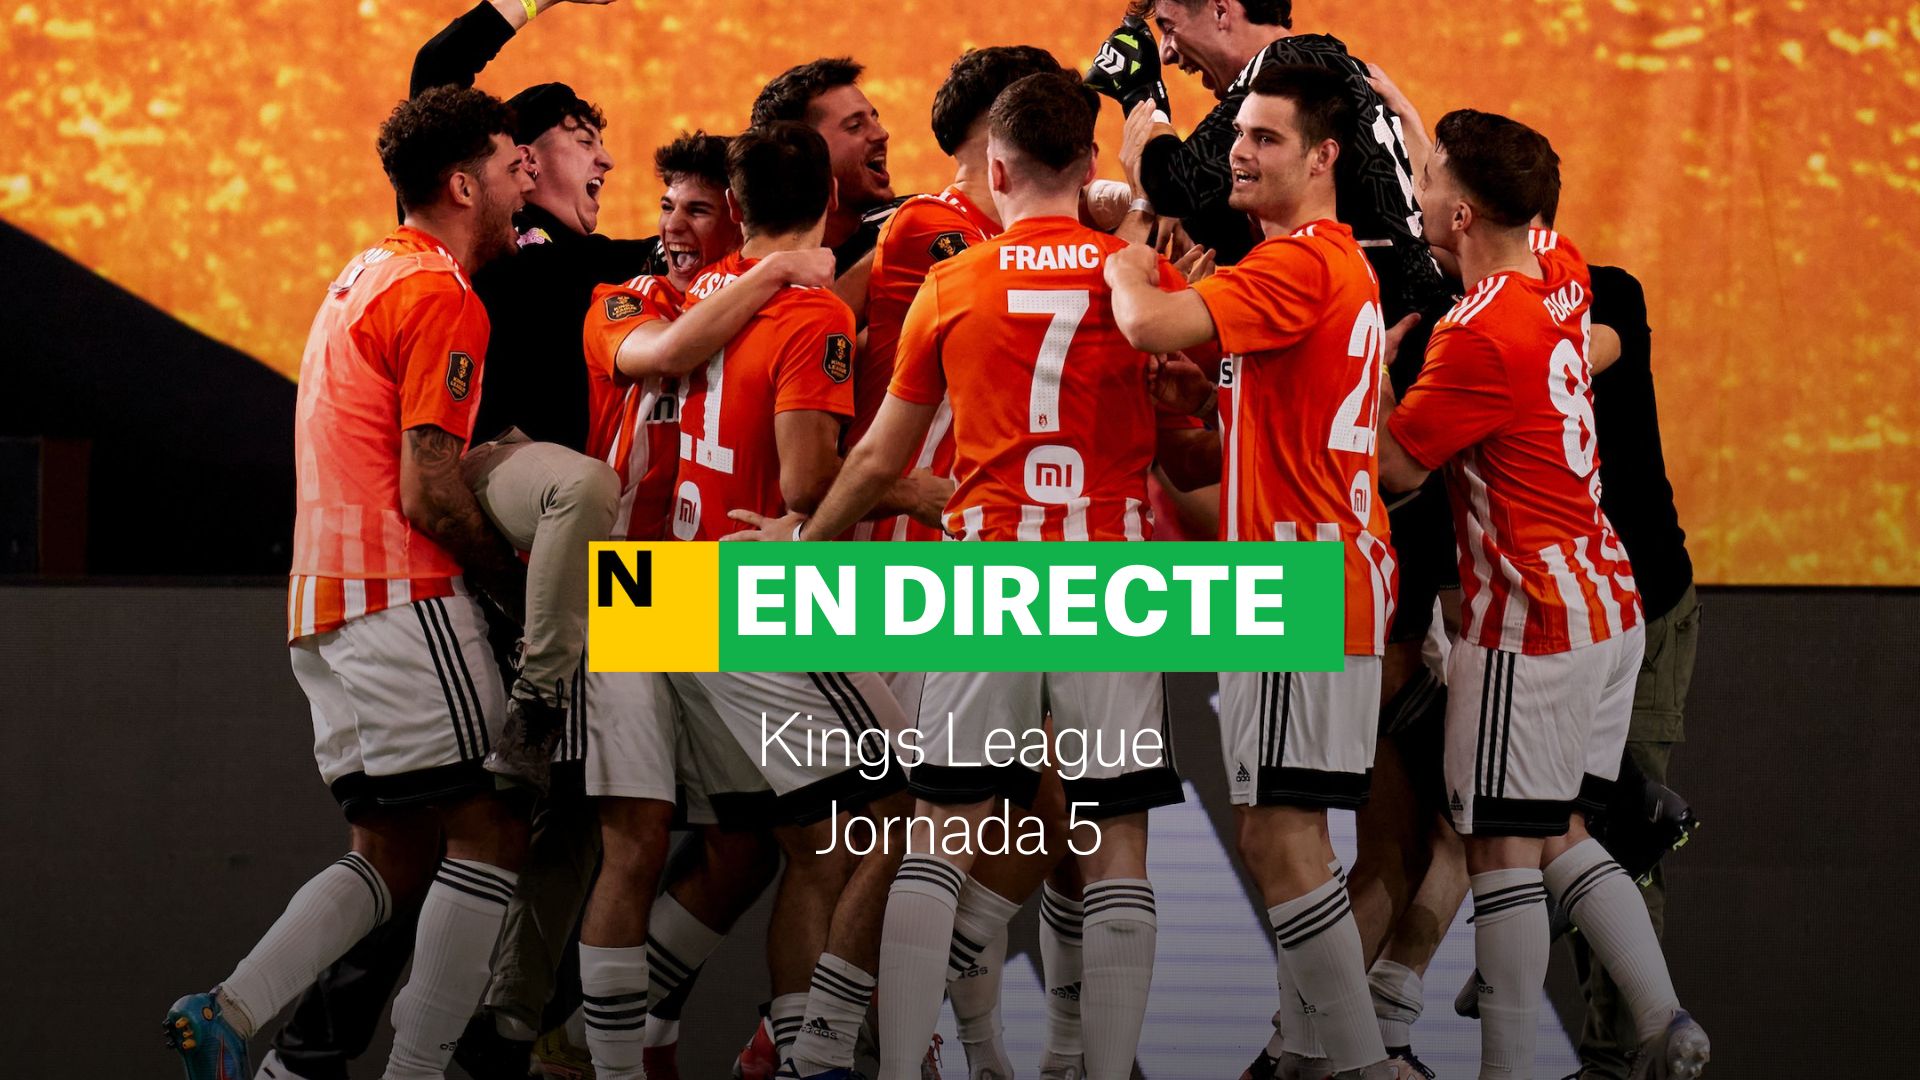 Kings League, Jornada 5 | DIRECTO: en juego los últimos dos partidos de la jornada